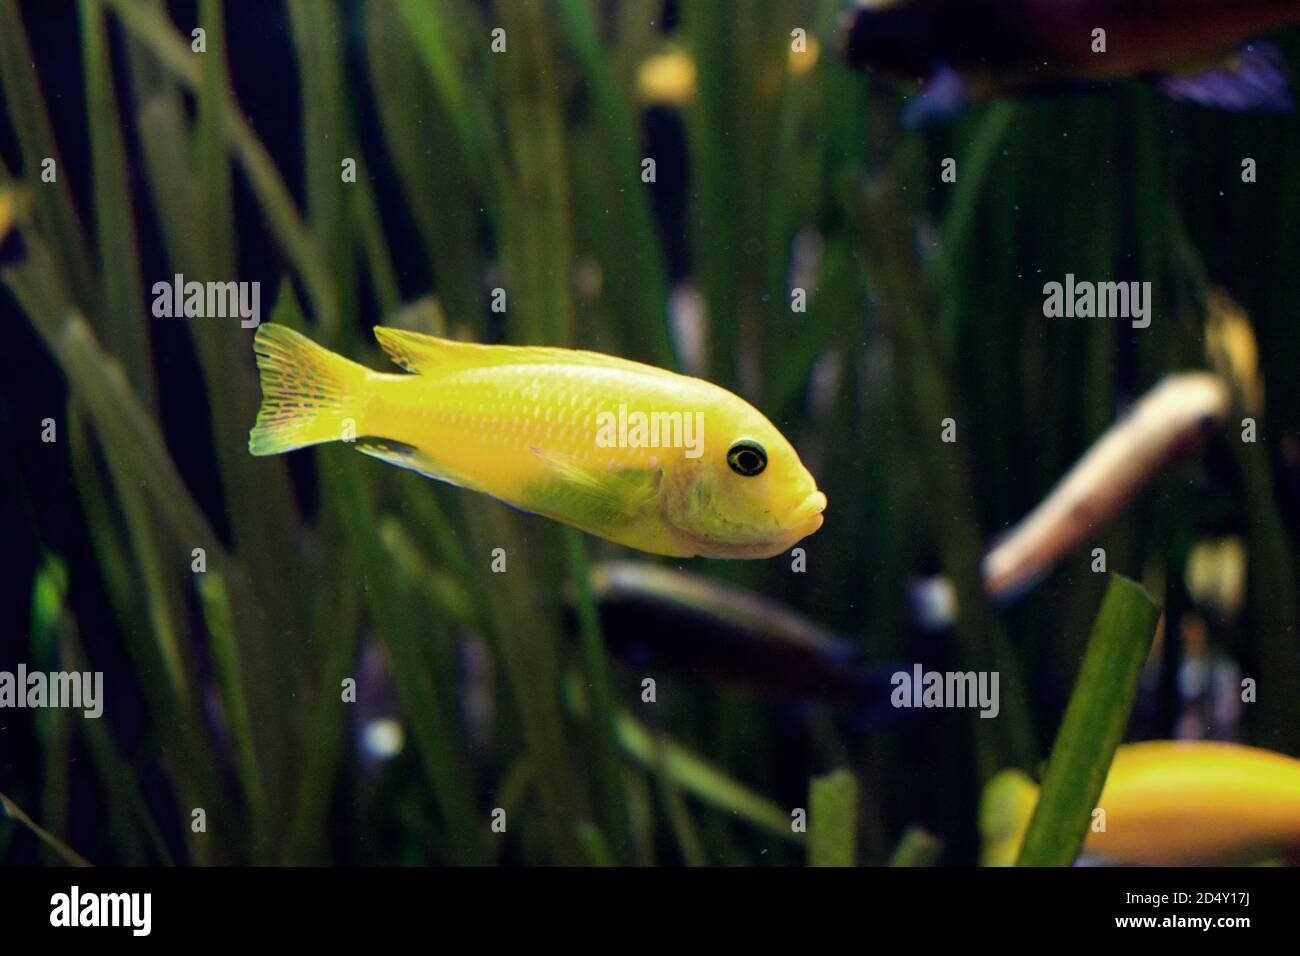 Piccolo pesce giallo di acqua salata in vasca, giallo lago malawi cichlid Foto Stock